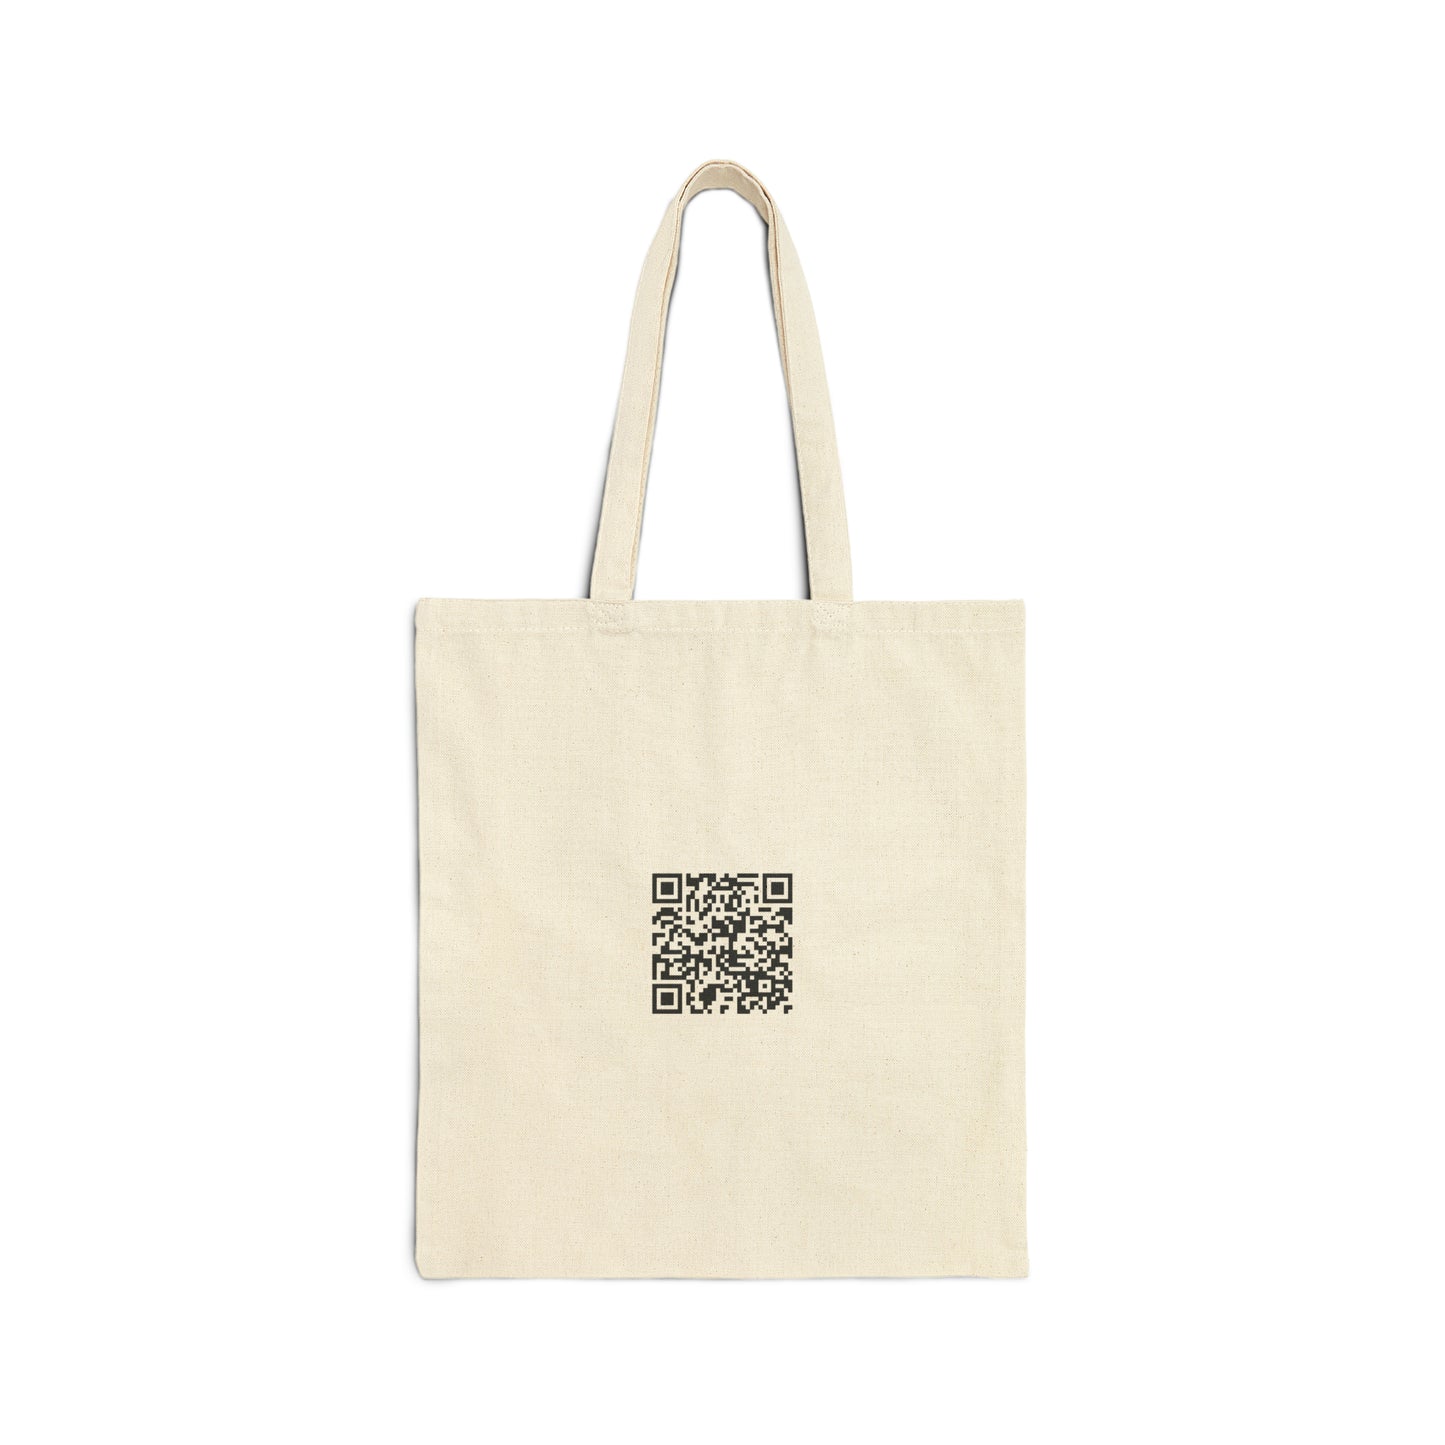 Theseus - Cotton Canvas Tote Bag